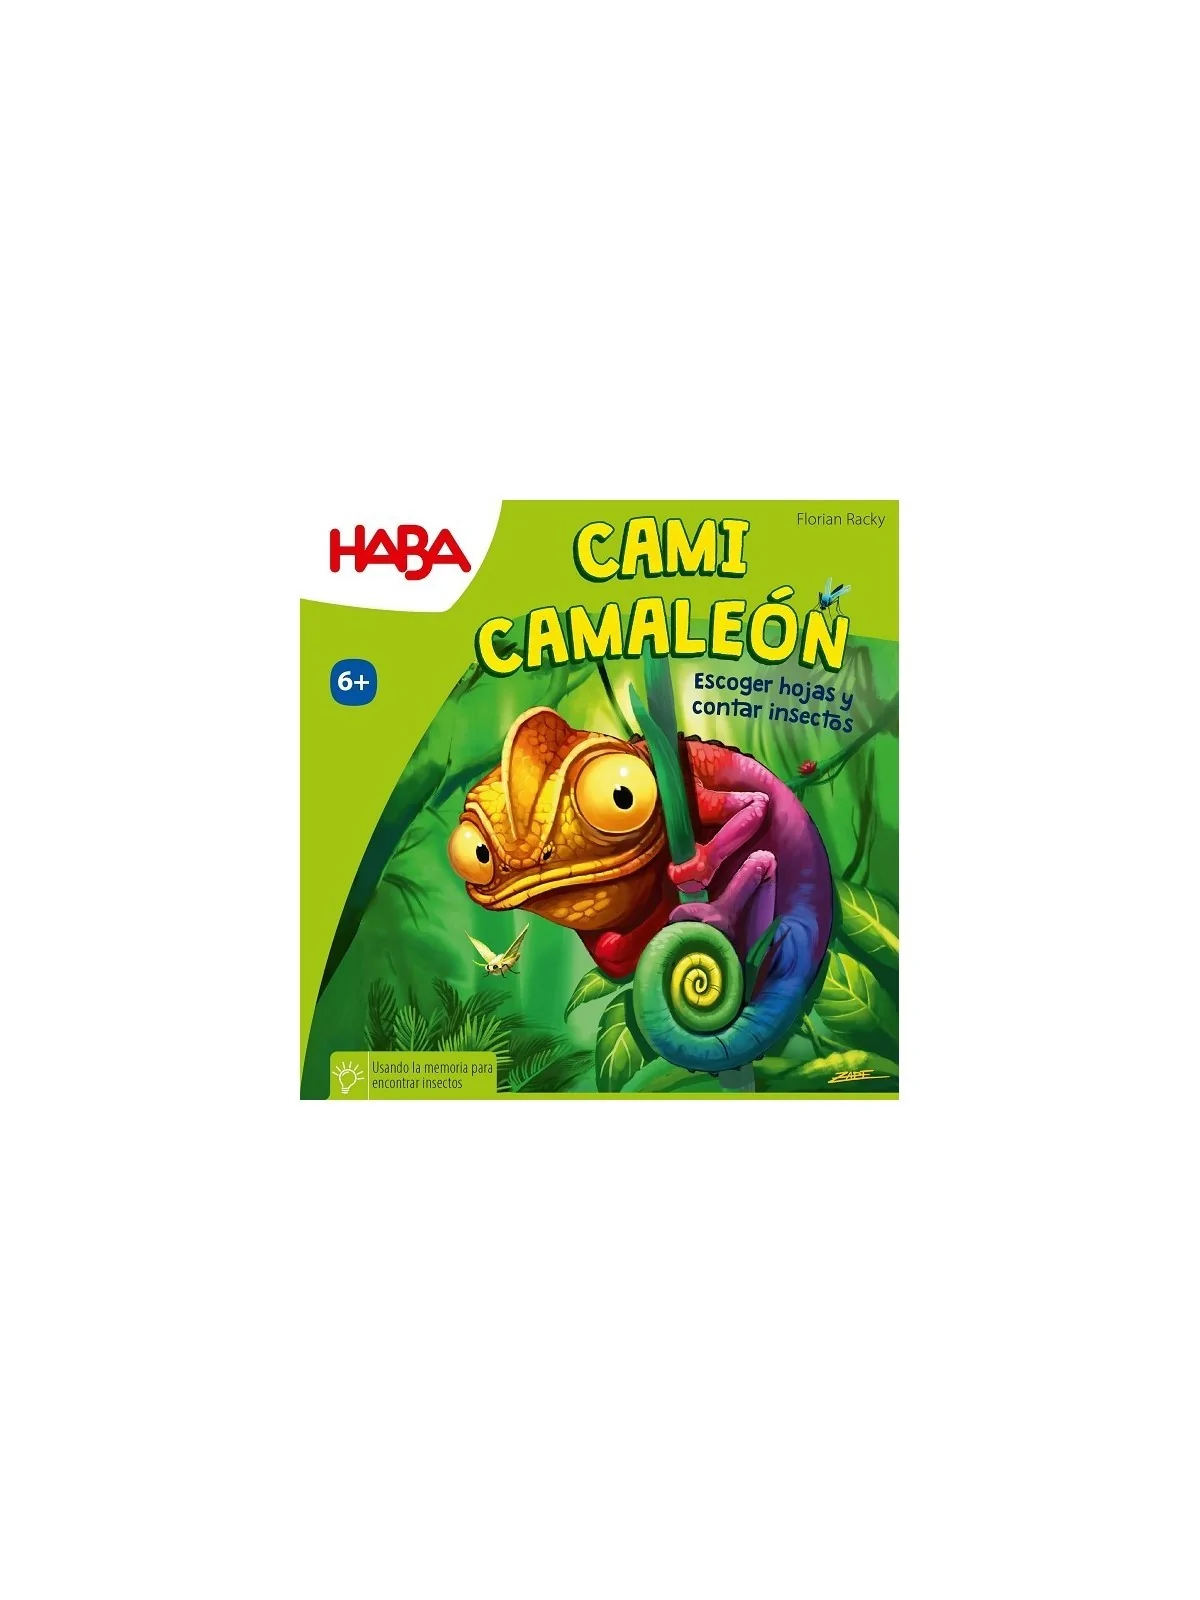 Comprar Cami Camaleon barato al mejor precio 17,99 € de Haba